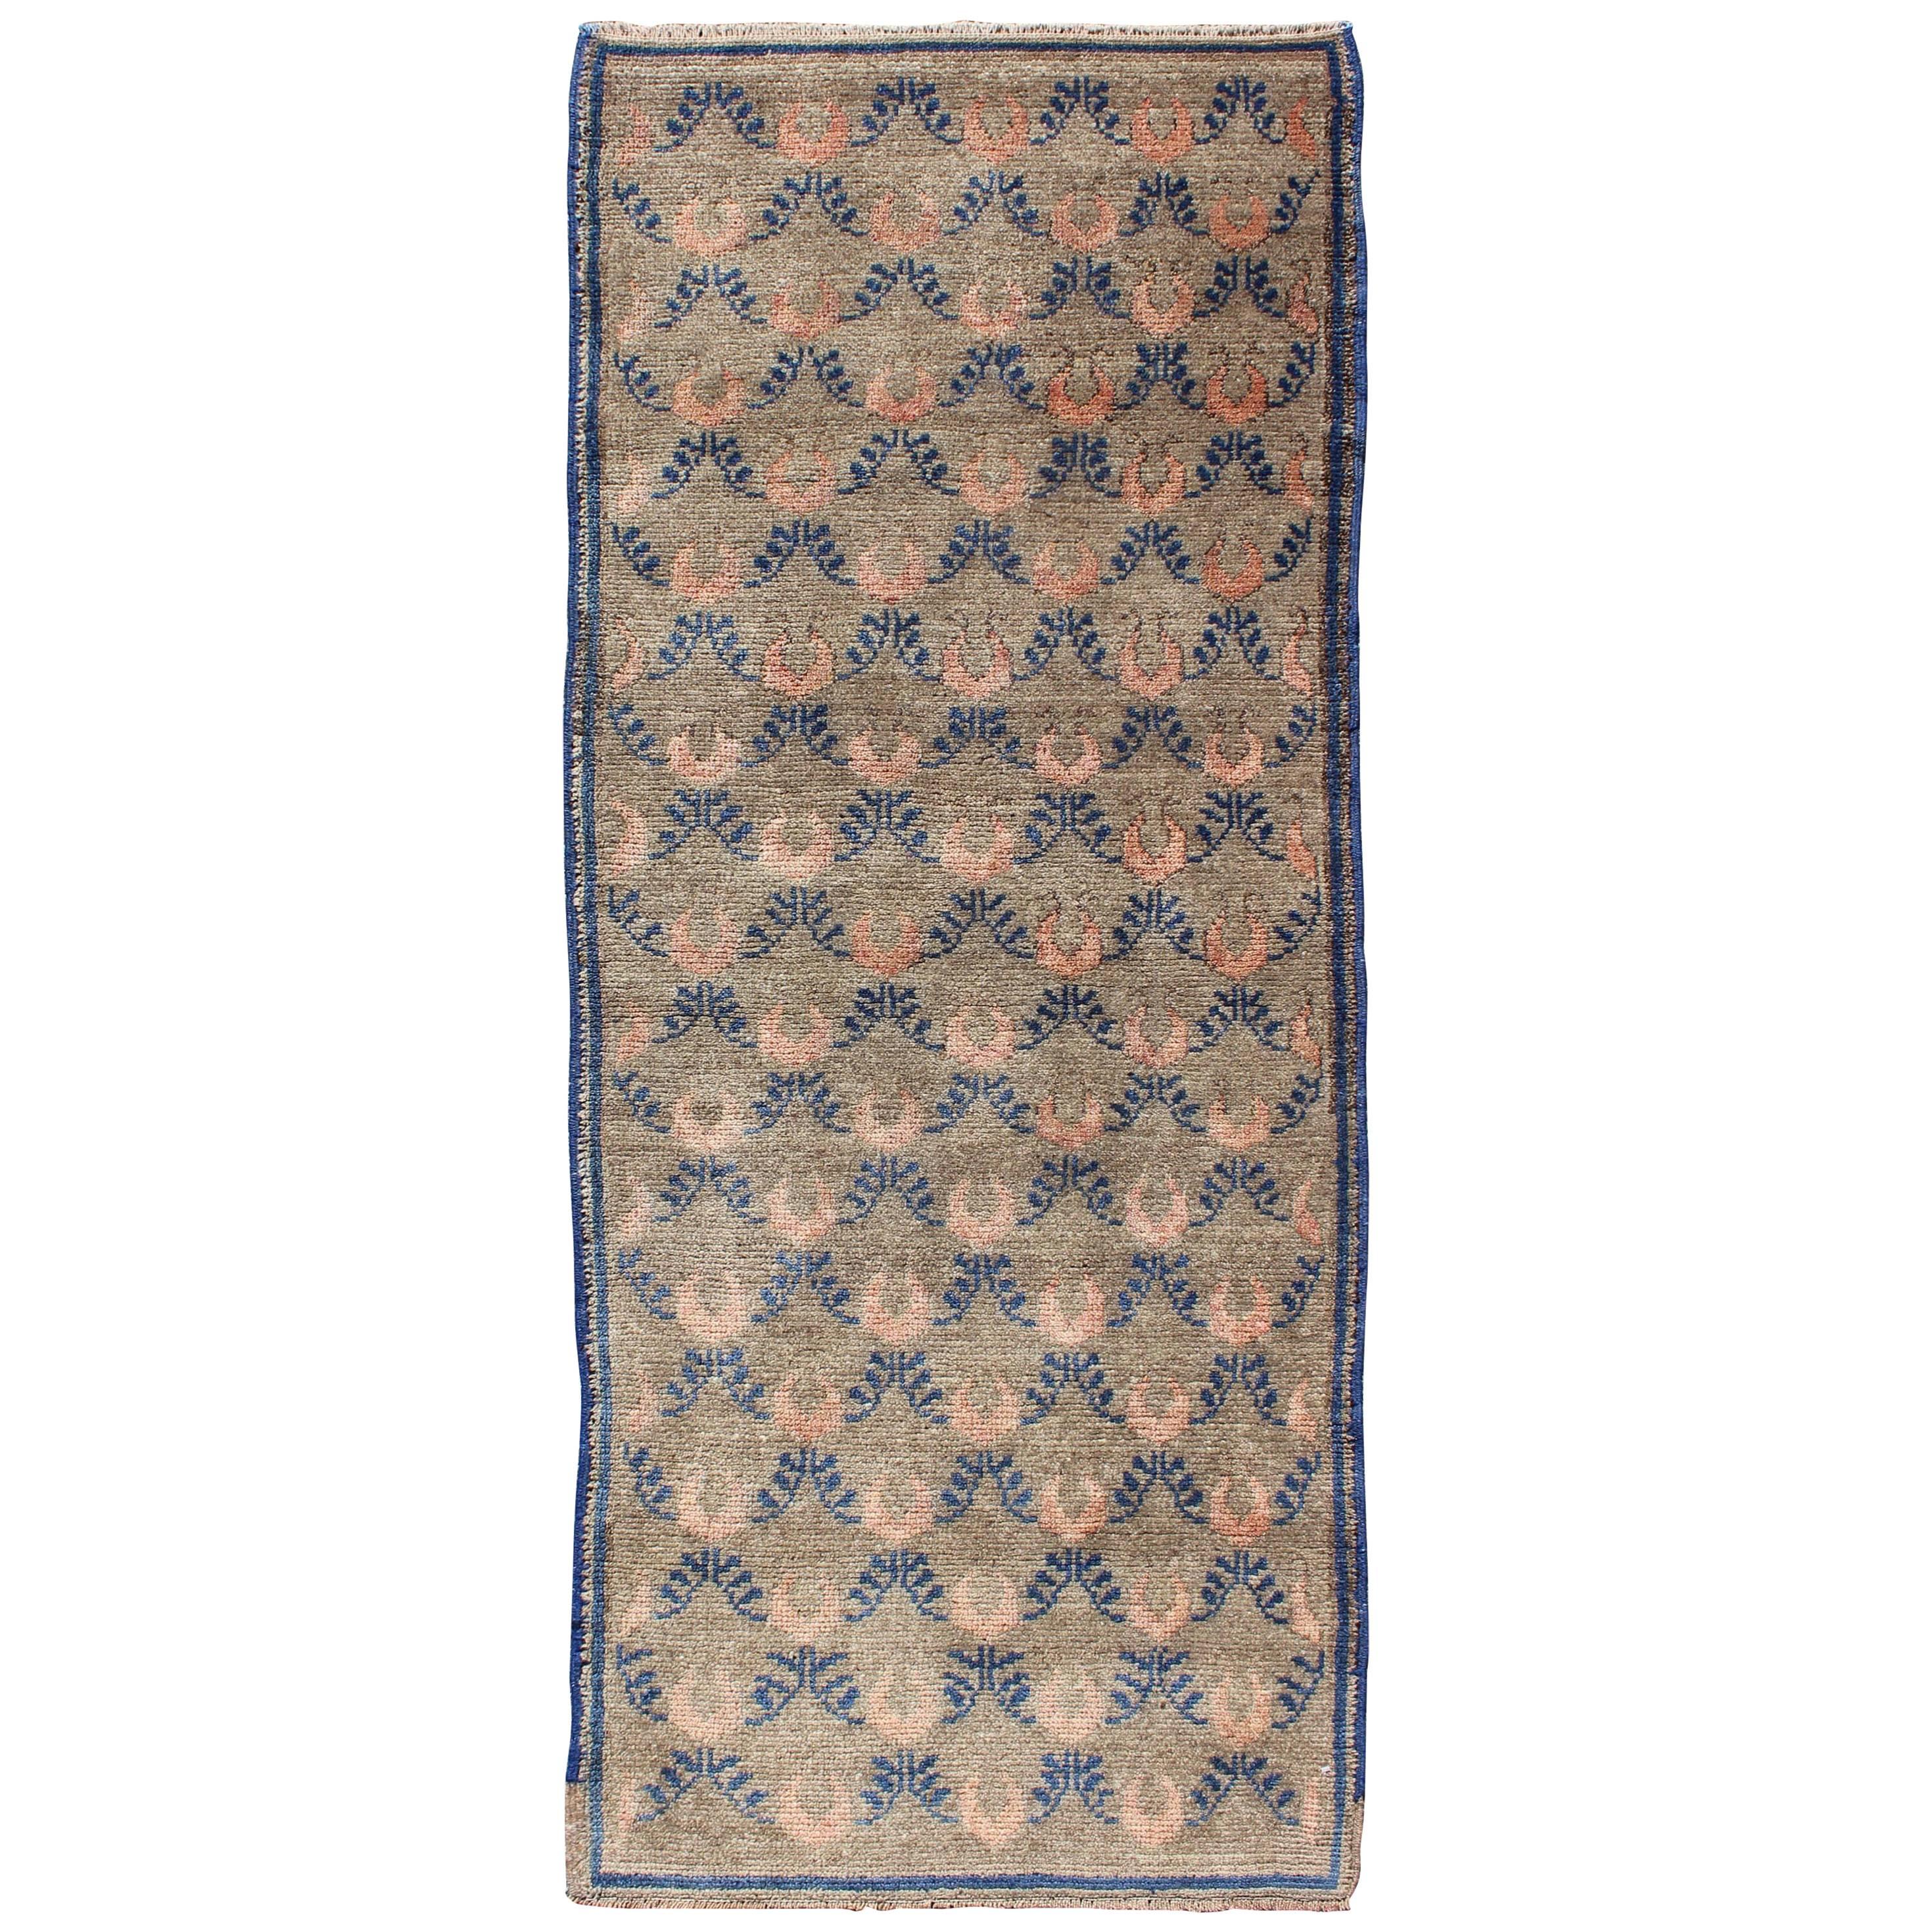 Türkischer Tulu-Teppich im Vintage-Stil mit Tan-, Creme- und Blau-Gitterarbeit